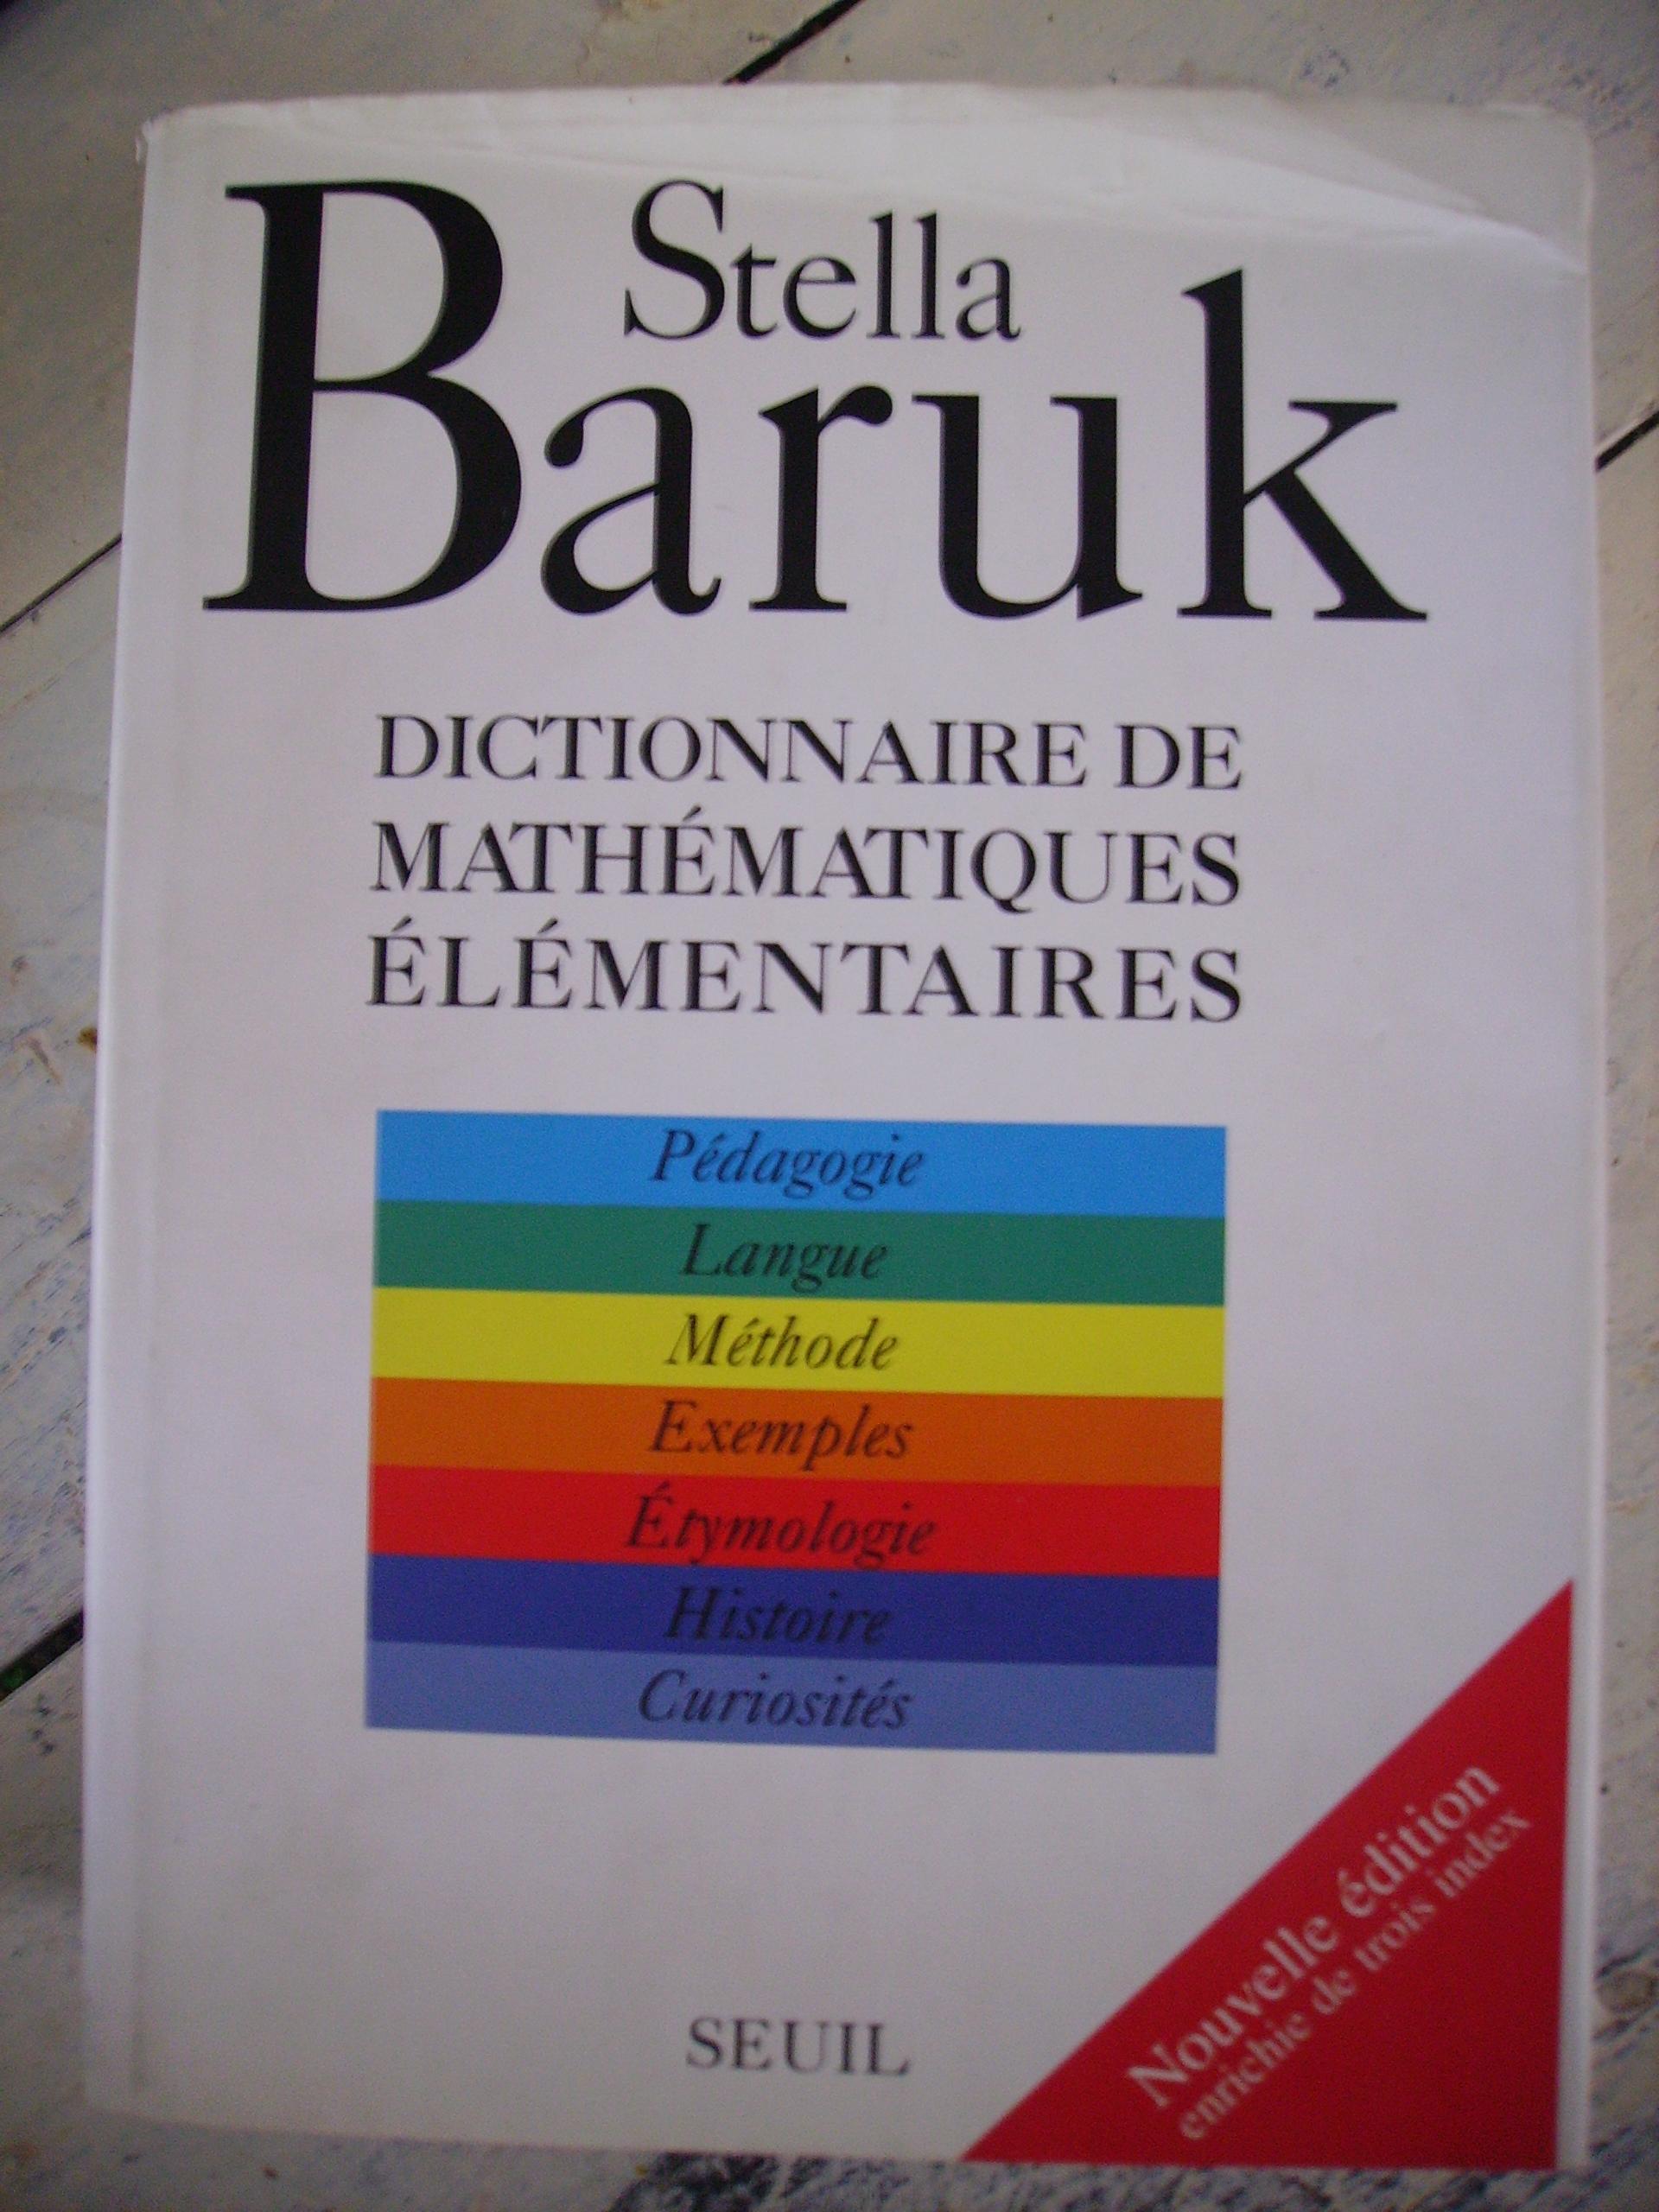 troc de troc dictionnaire de maths "stella baruk" image 0